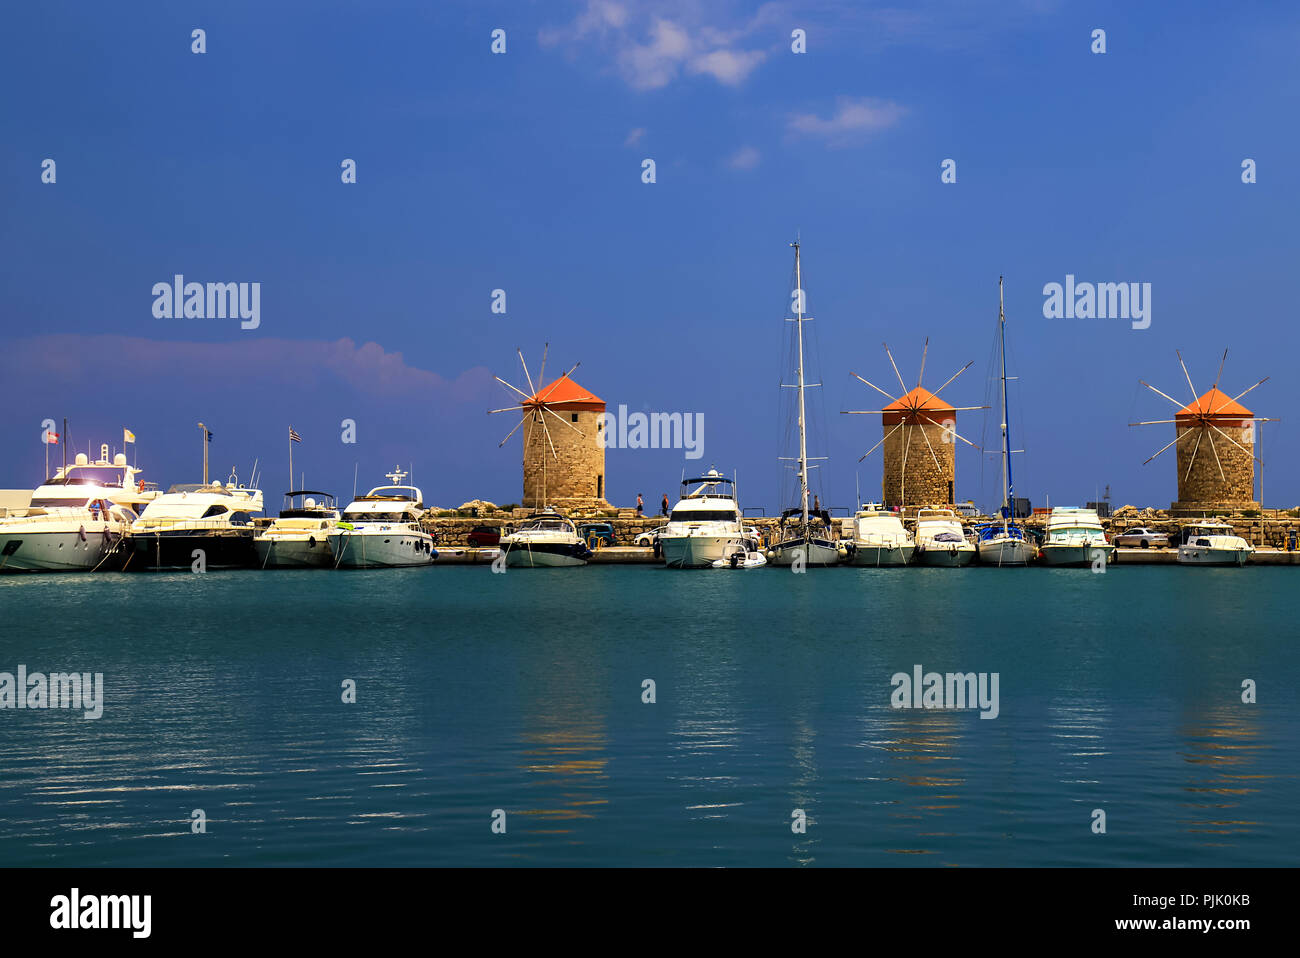 Jaune et orange vieux moulins à vent dans le port, les yachts et les blancs, de la mer turquoise. Rhodes, Grèce - un lieu pour des excursions, voyages Banque D'Images